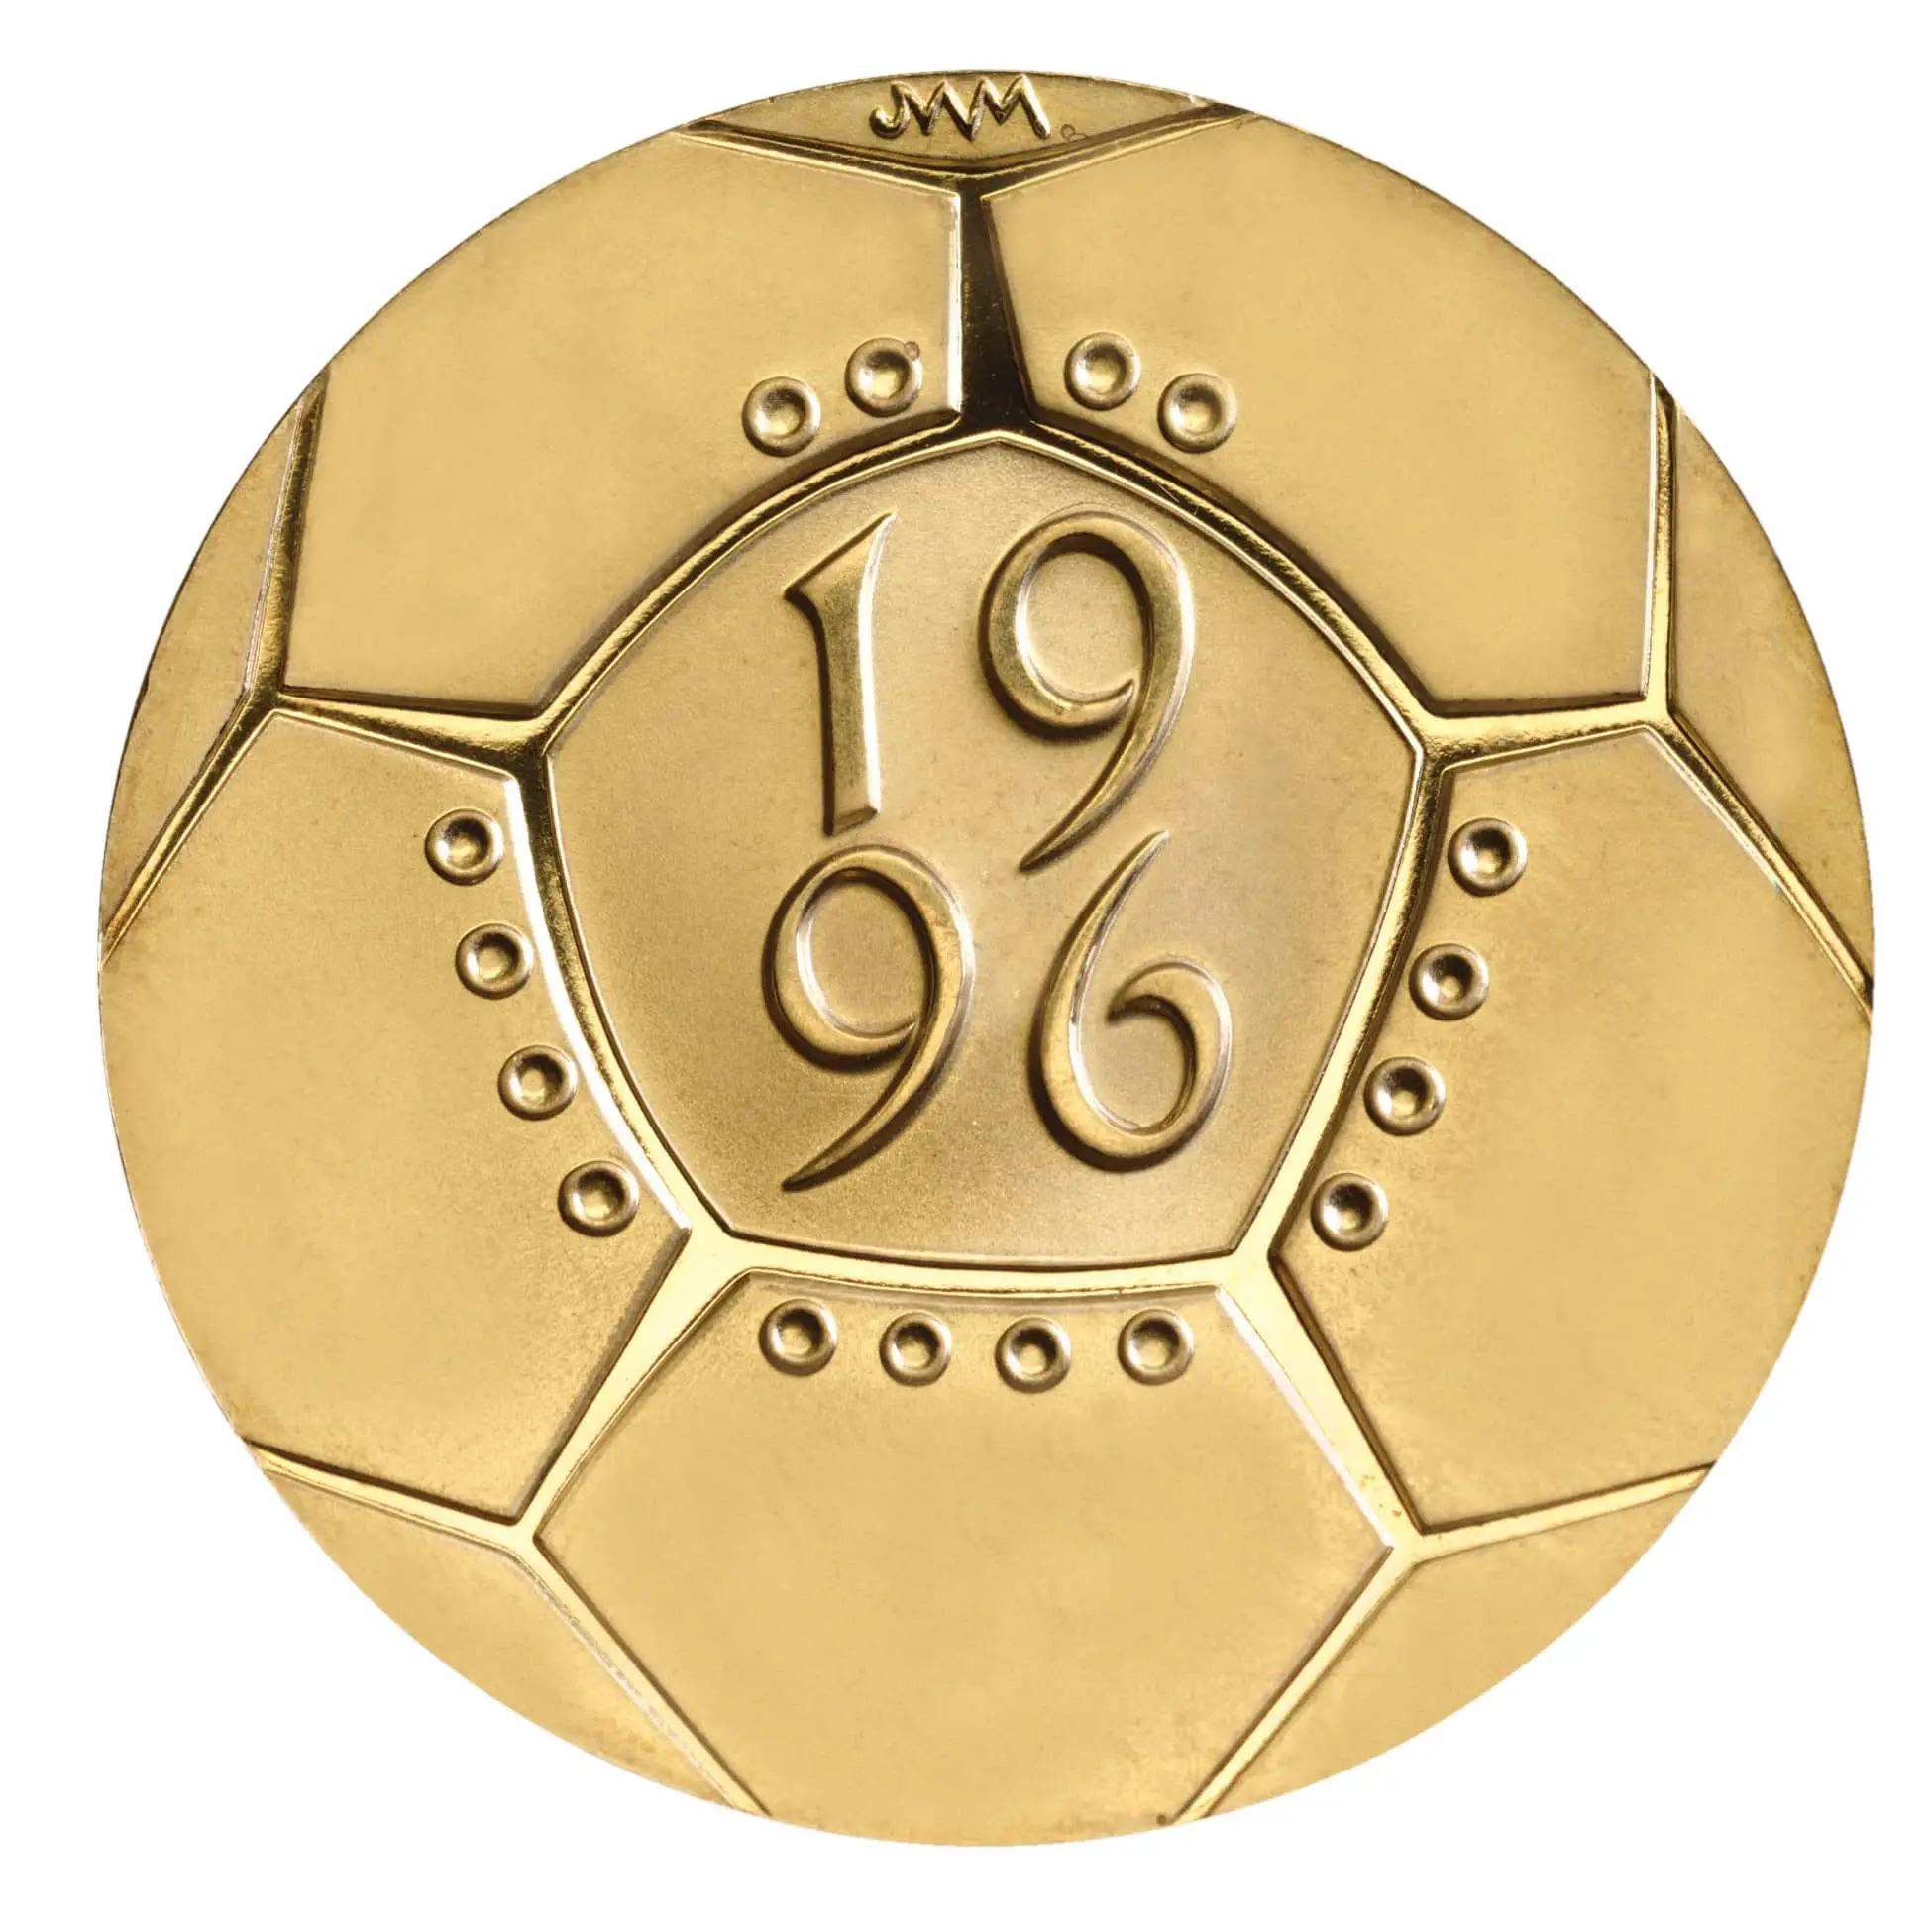 The 1996 Football £2 coin design